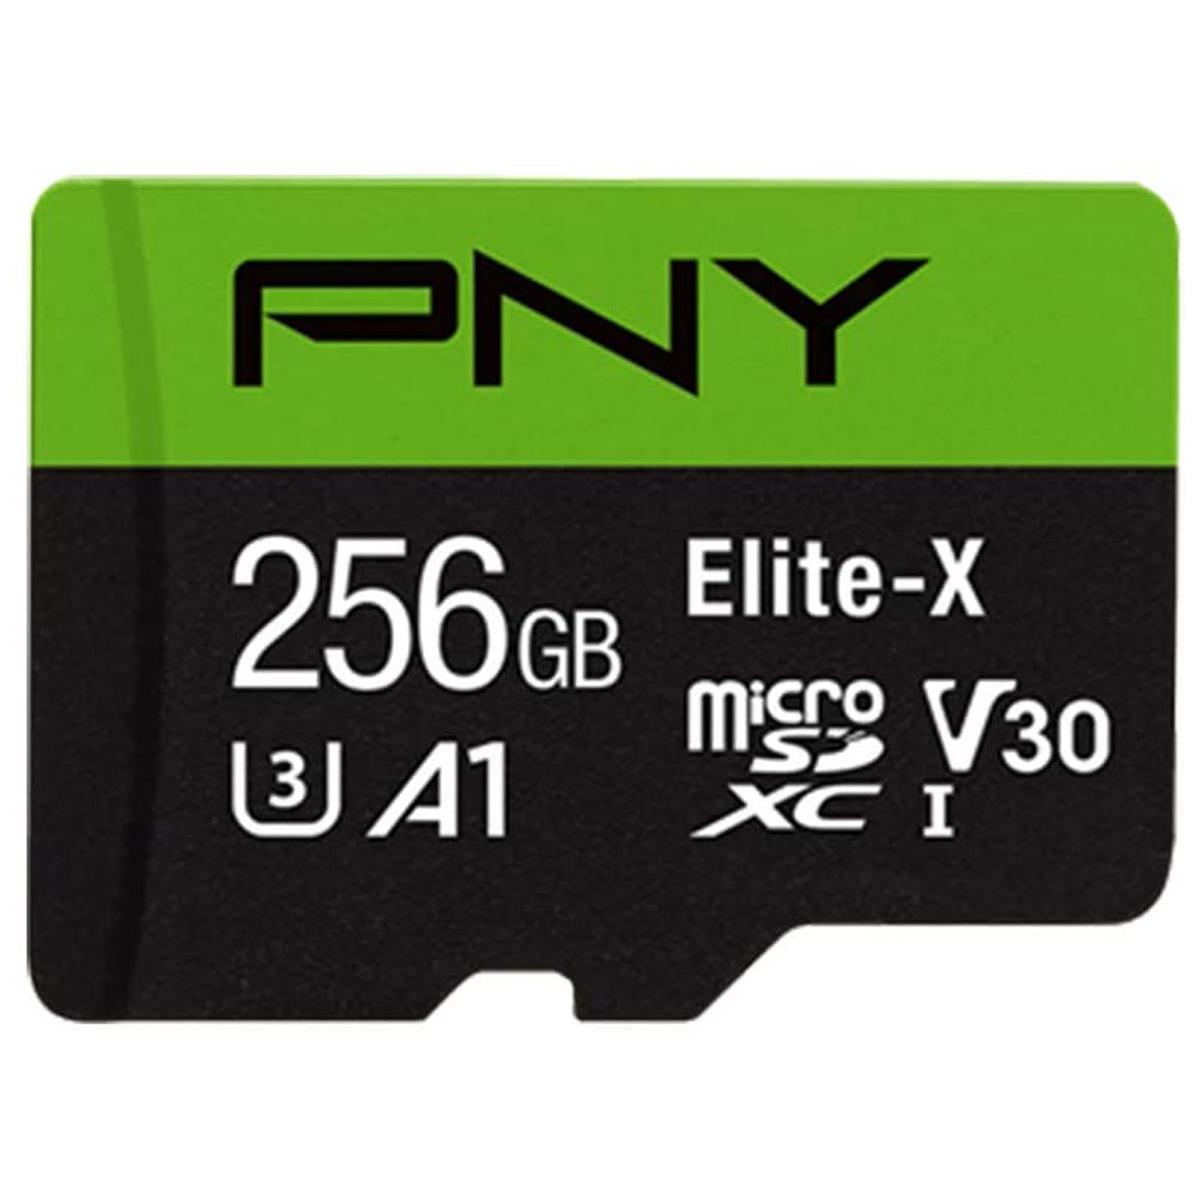 

PNY Technologies 256GB Elite-X microSDXC Class 10 UHS-I U3 Memory Card